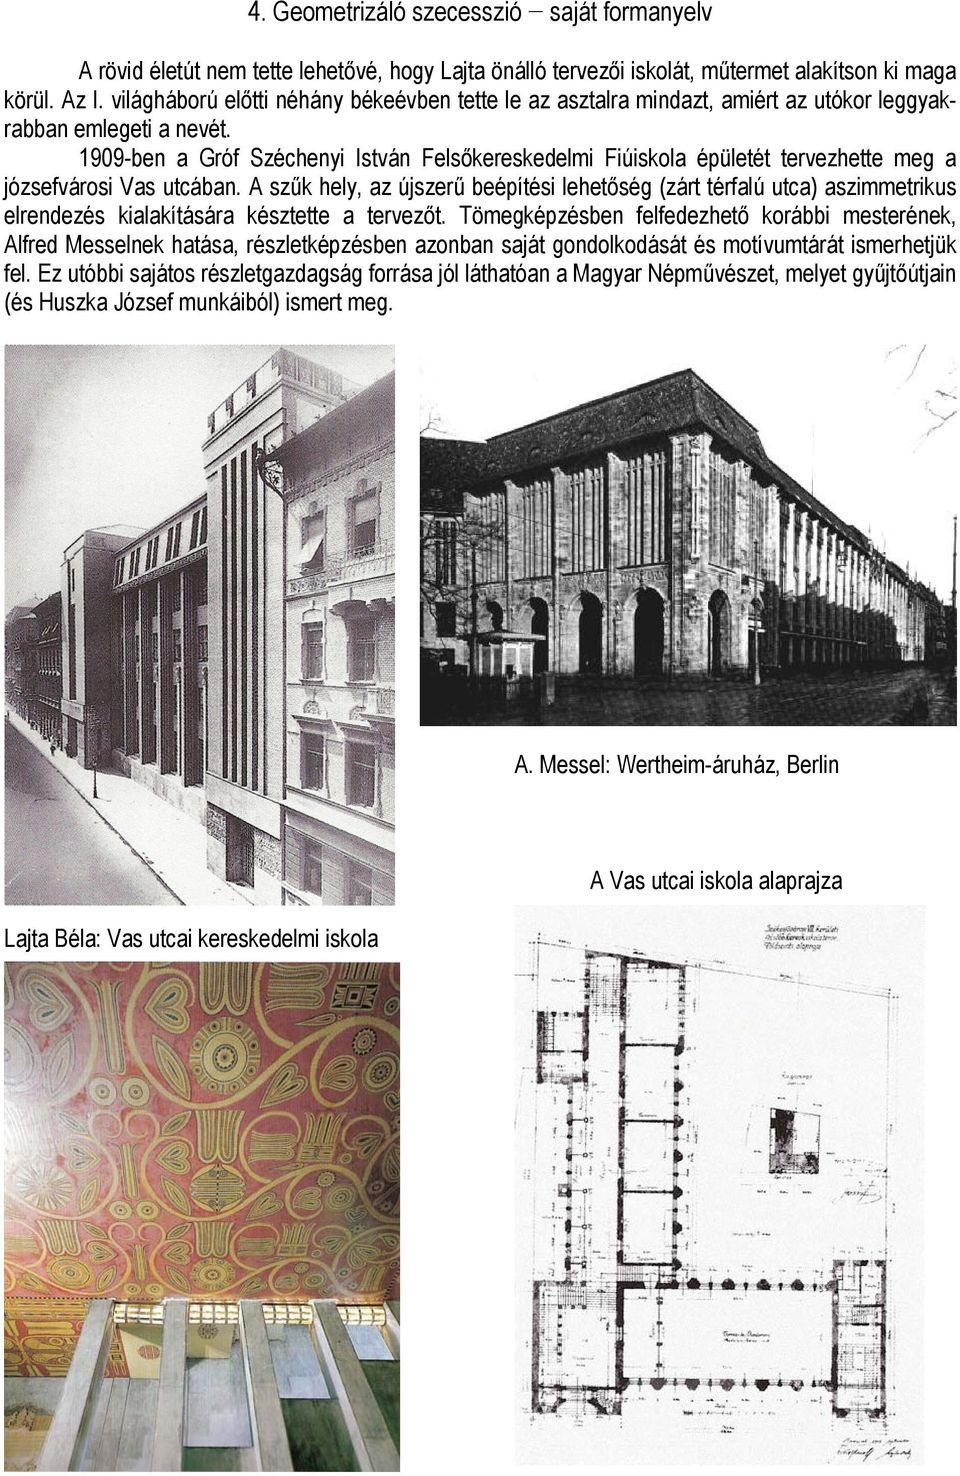 1909-ben a Gróf Széchenyi István Felsőkereskedelmi Fiúiskola épületét tervezhette meg a józsefvárosi Vas utcában.